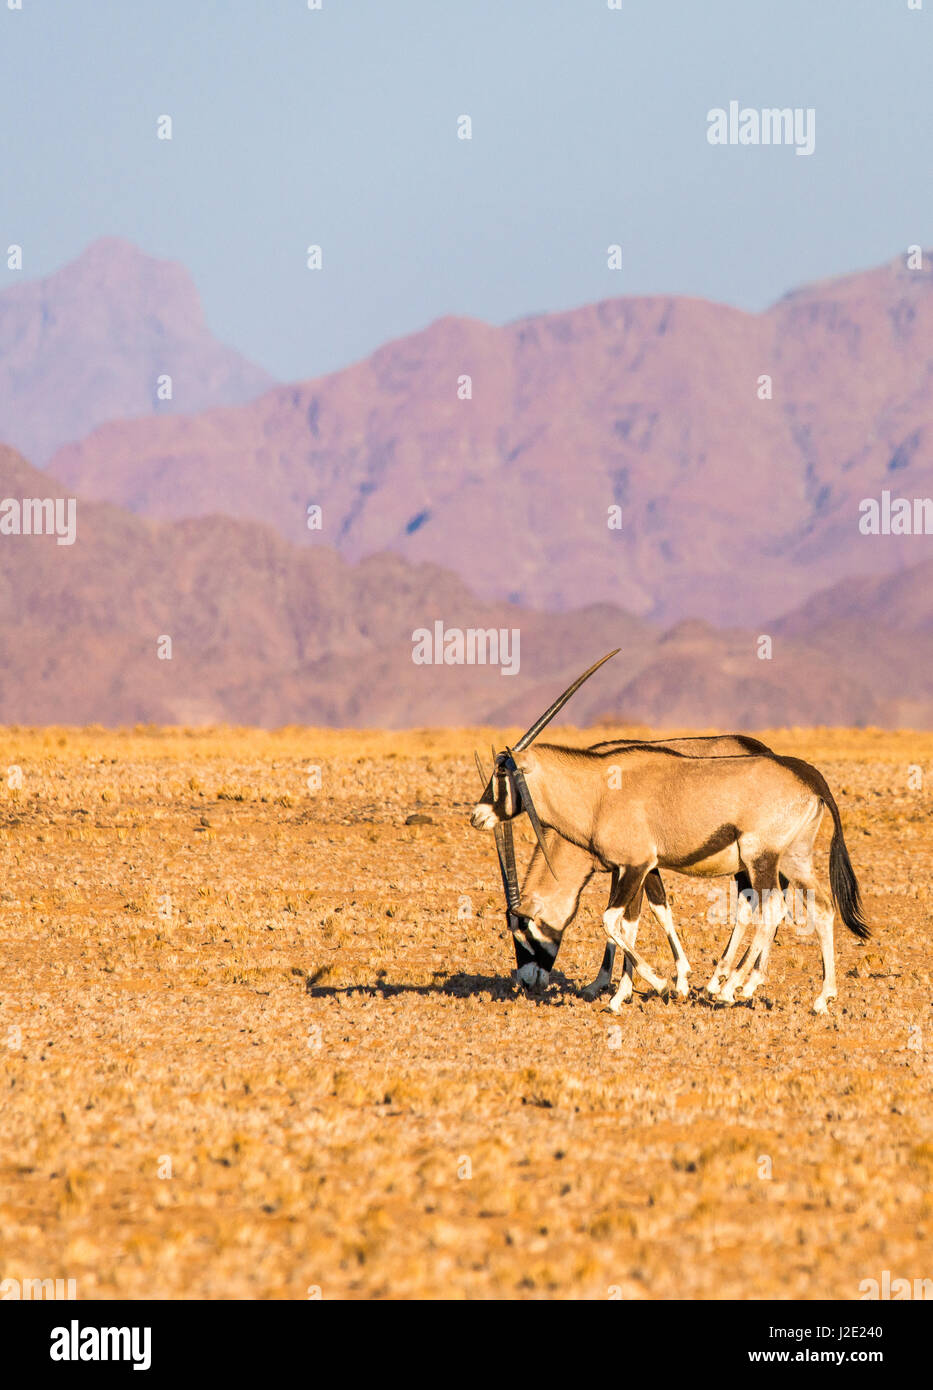 Coppia di oryx namibiano sostare vicino al calore del giorno nel Deserto Namibiano, con delle montagne del deserto in background Foto Stock